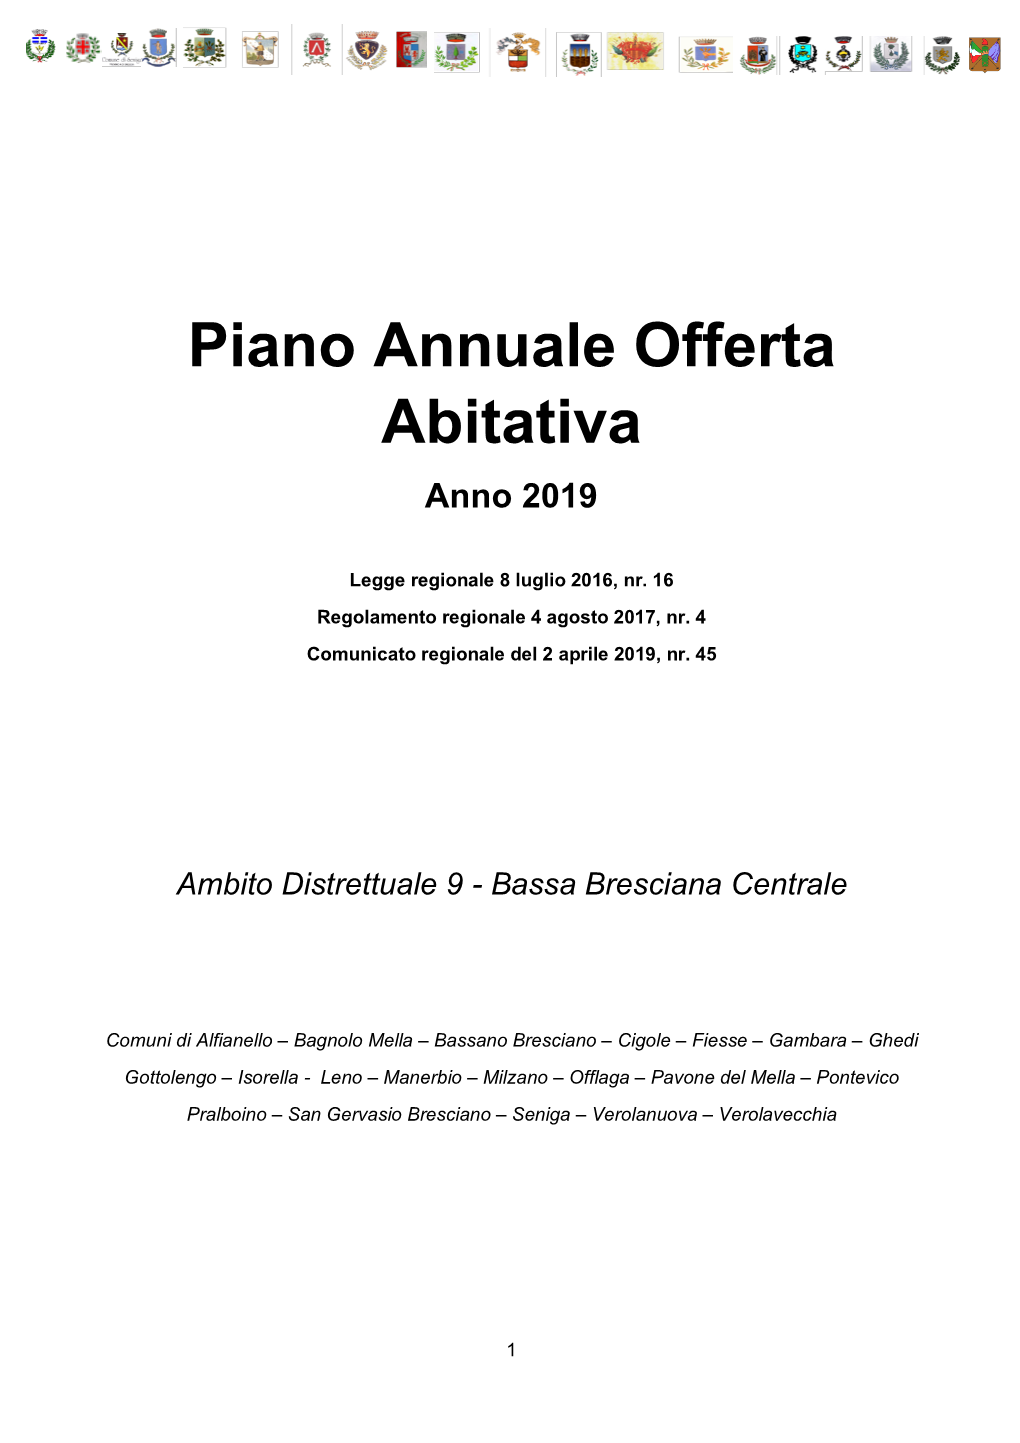 Piano Annuale Offerta Abitativa Anno 2019